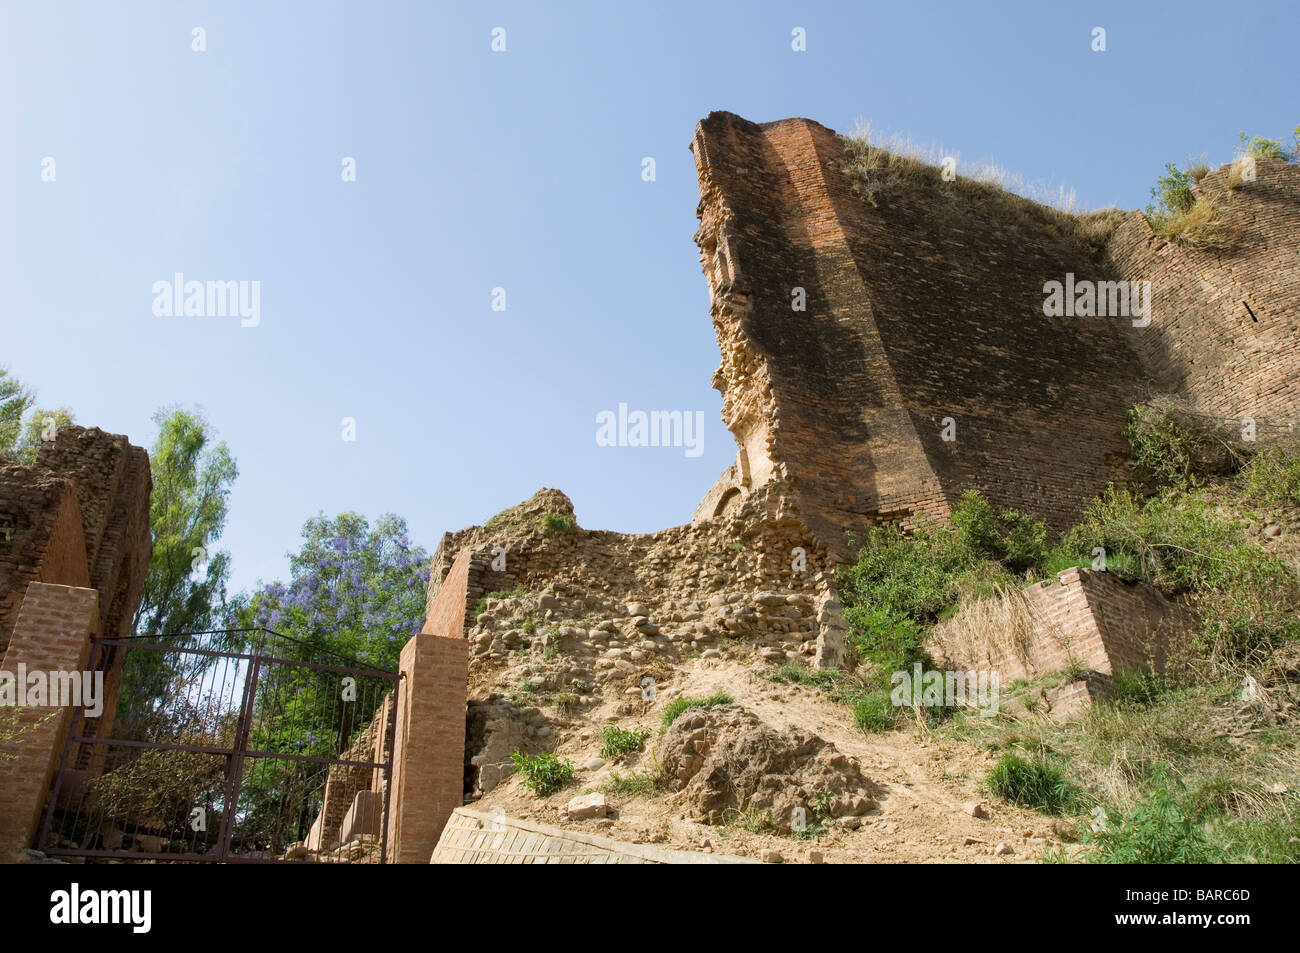 Anciennes ruines d'un bâtiment, la civilisation de la vallée de l'Indus, le Jammu-et-Cachemire, l'Inde Banque D'Images